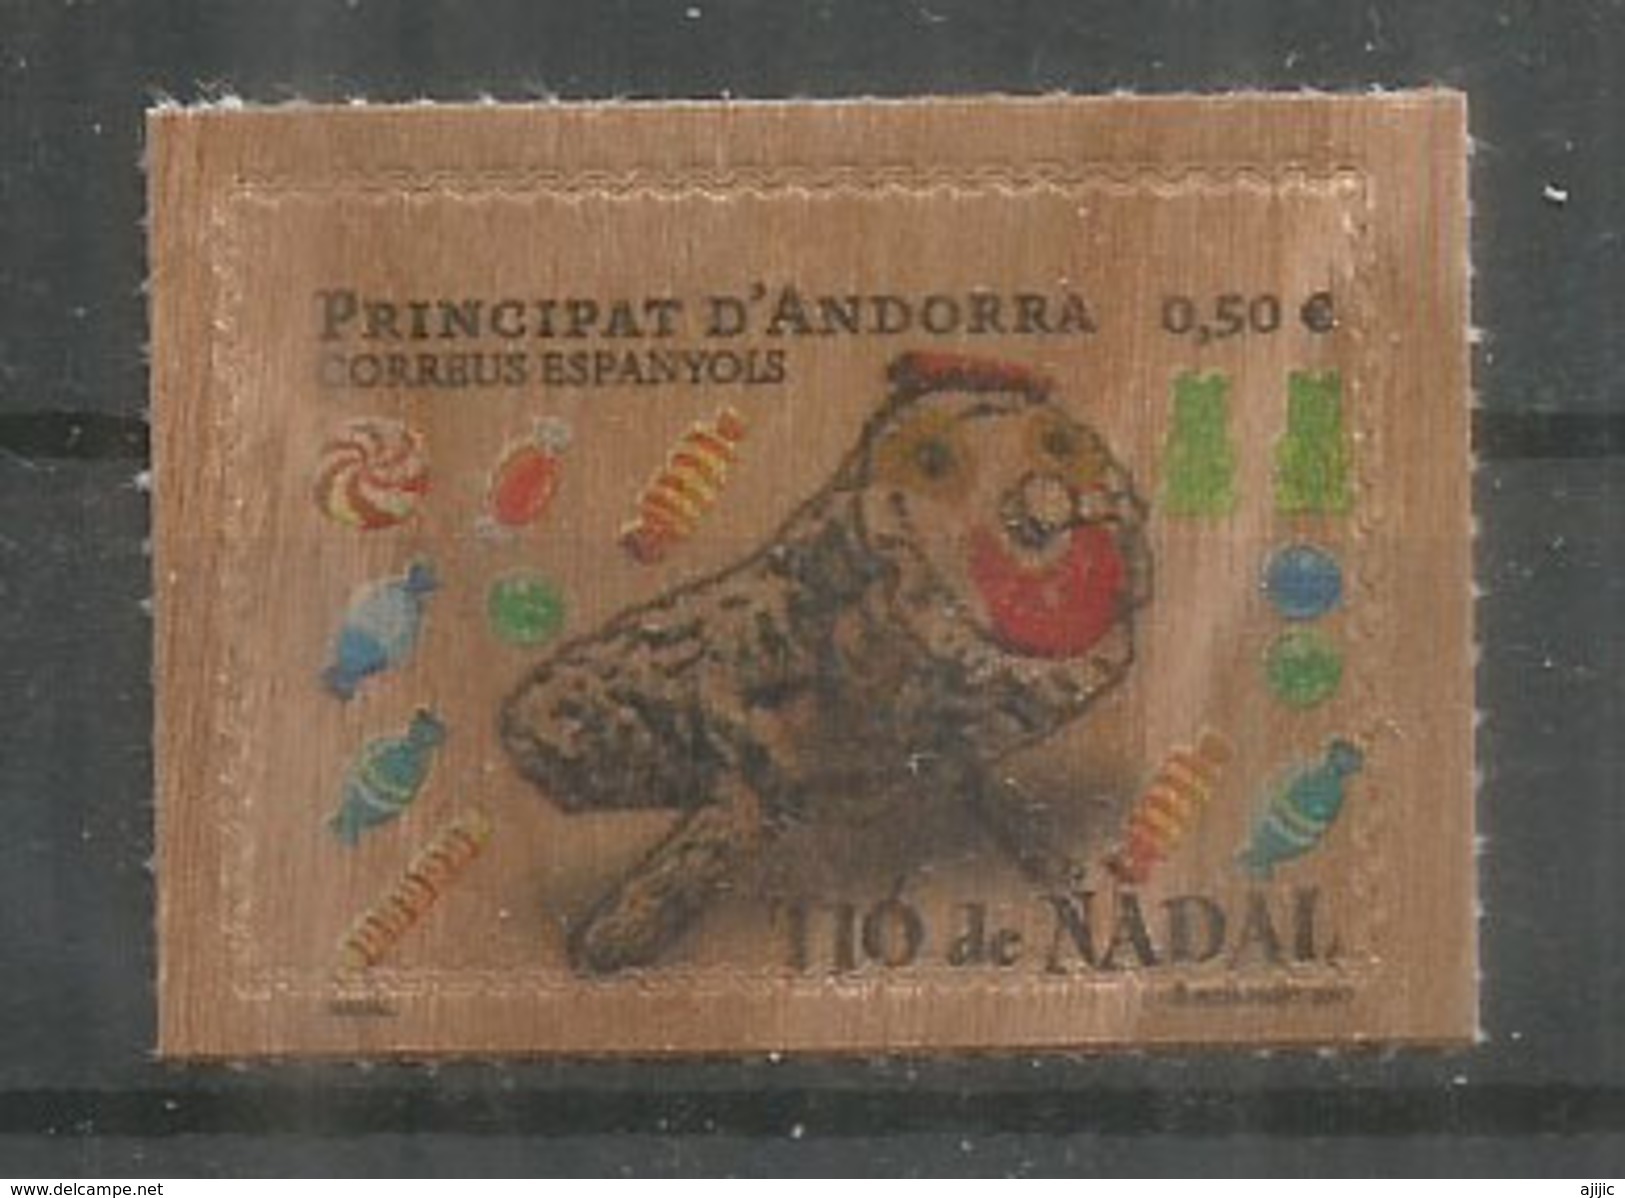 ANDORRA. Timbre En Bois.Tio De Nadal, (gateau Bûche De Noël)  Neuf  ** Année 2017 (Wood Paper Stamp) - Unused Stamps